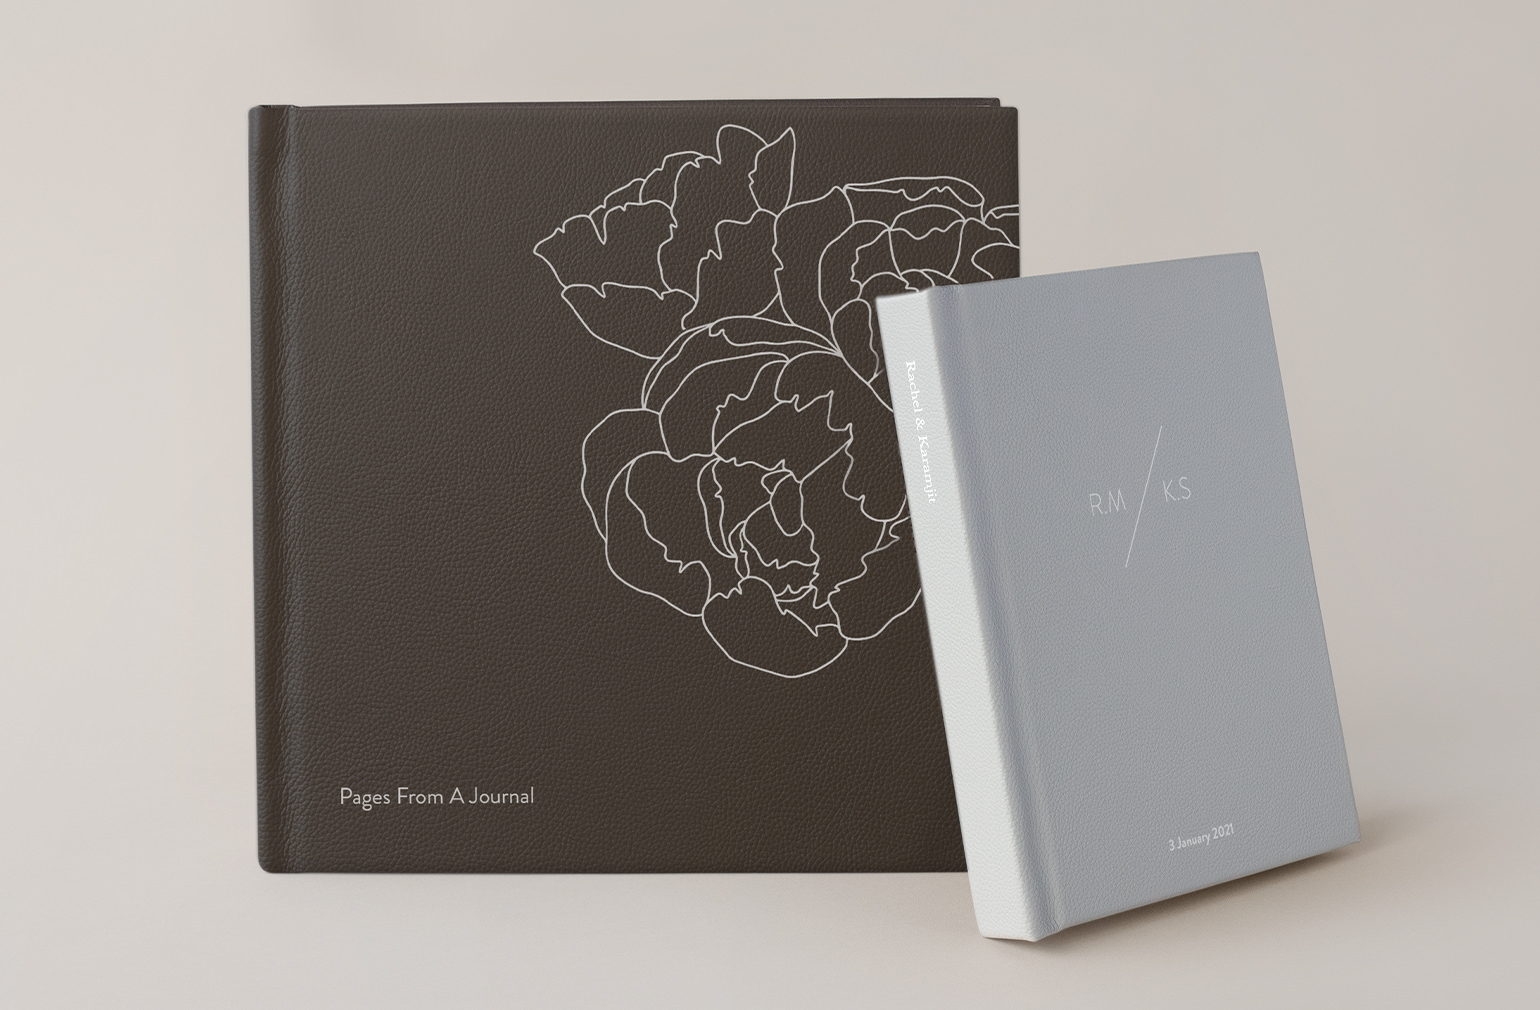 Álbum de fotos de cuero mocca con cubierta de diseño plateado junto a un álbum de cuero gris plateado.